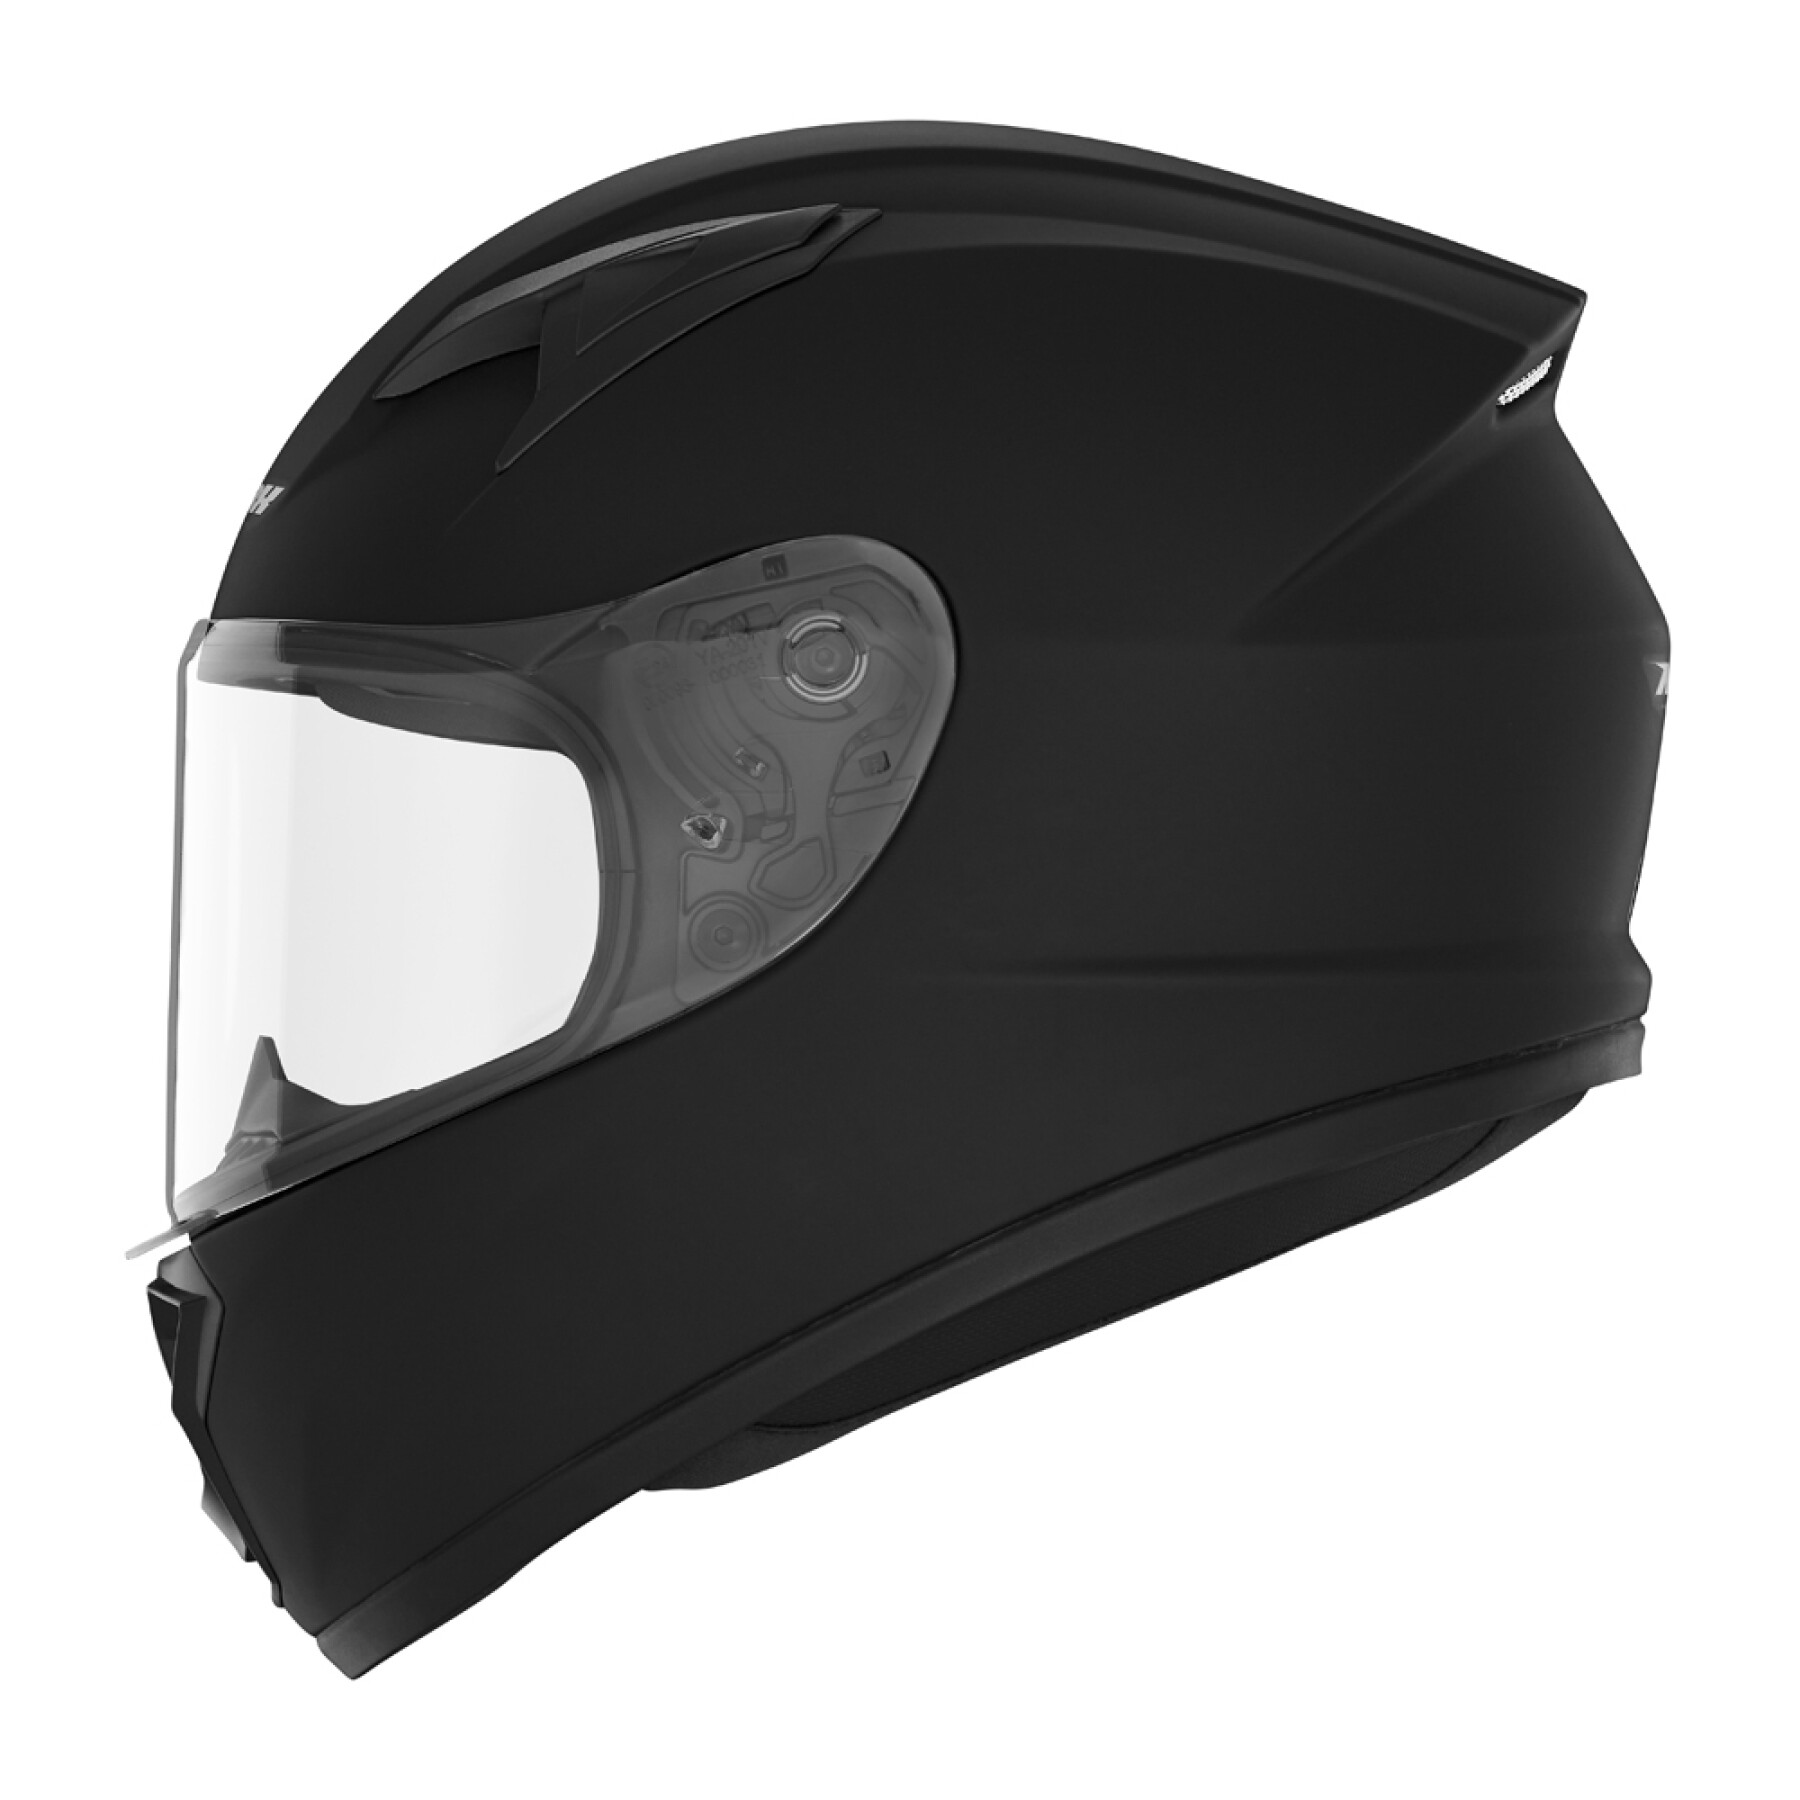 Full face motorcycle helmet Nox N731